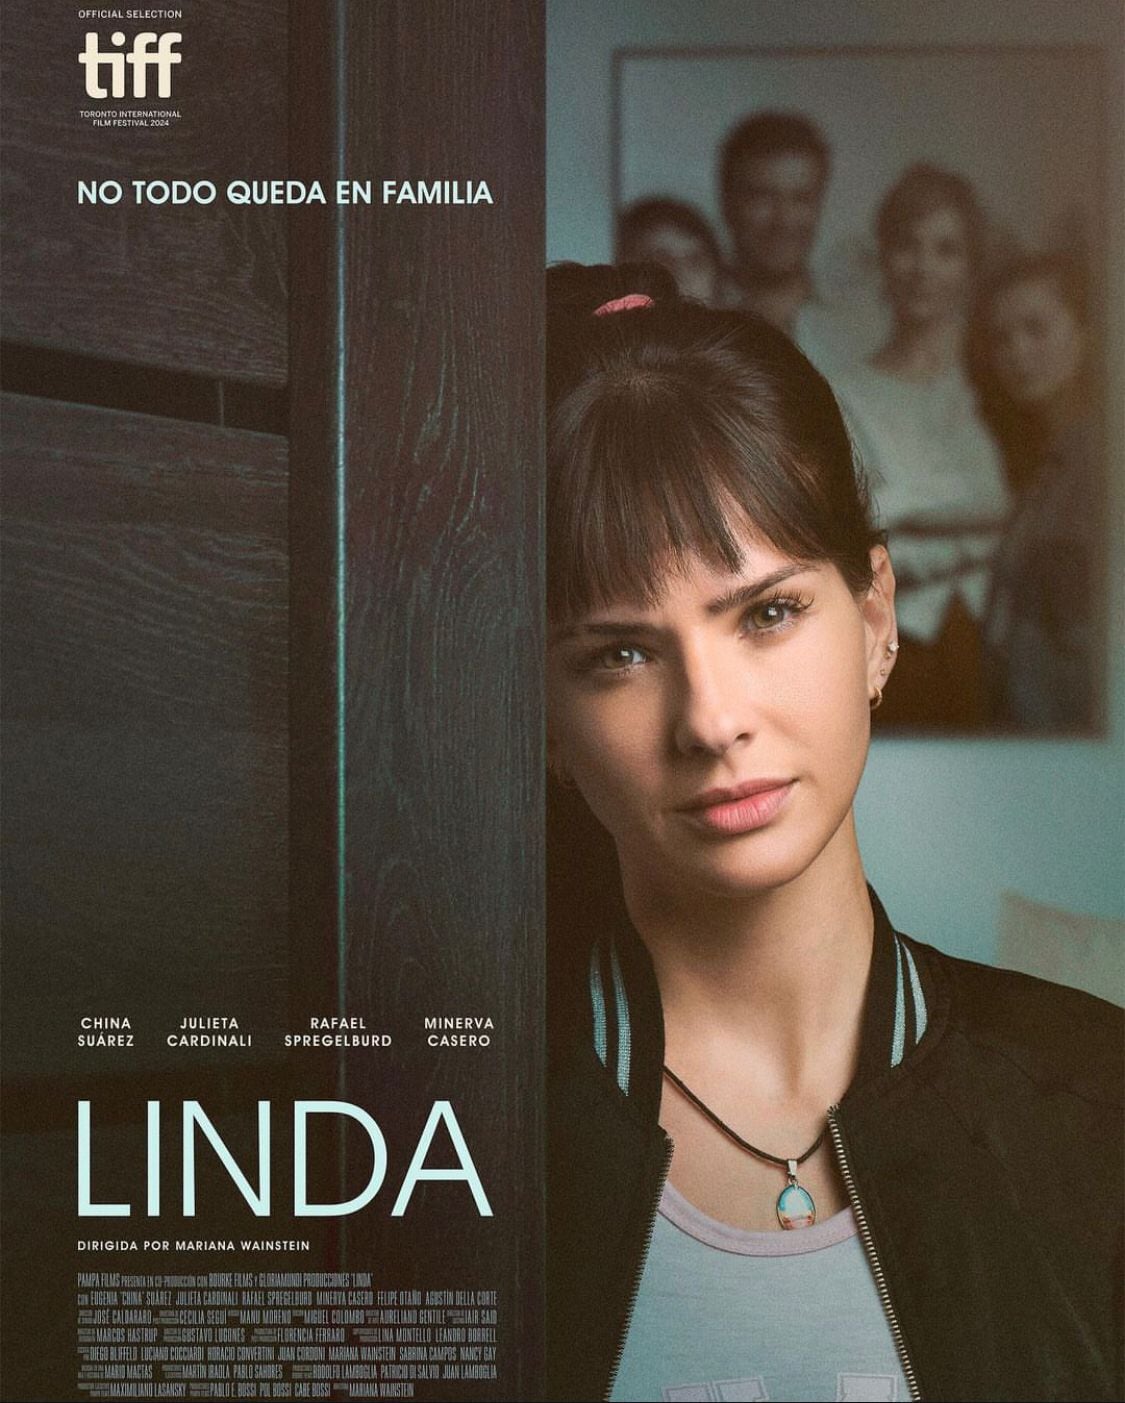 Así luce la película "Linda" donde actúa La China Suárez.